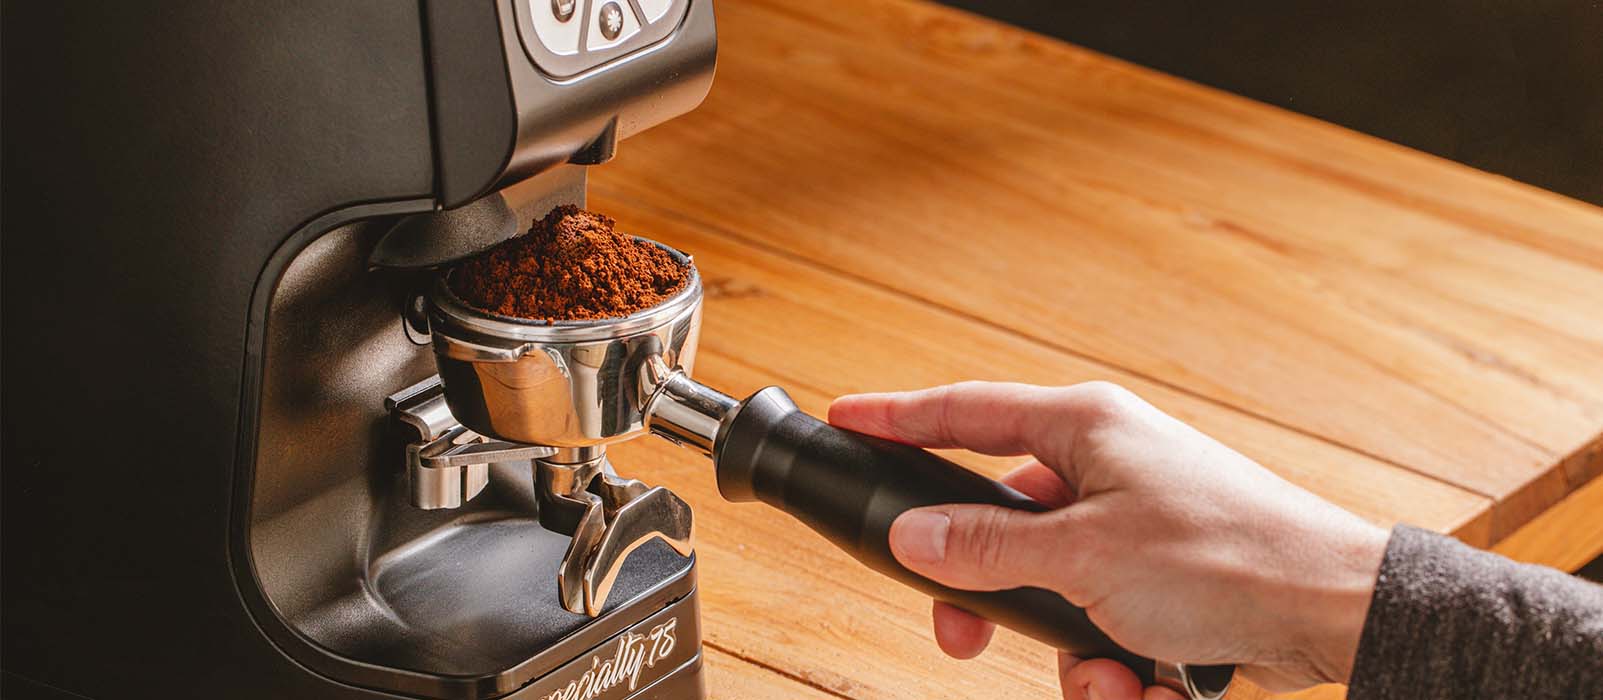 Quelle machine à café à grain choisir ? - MaxiCoffee